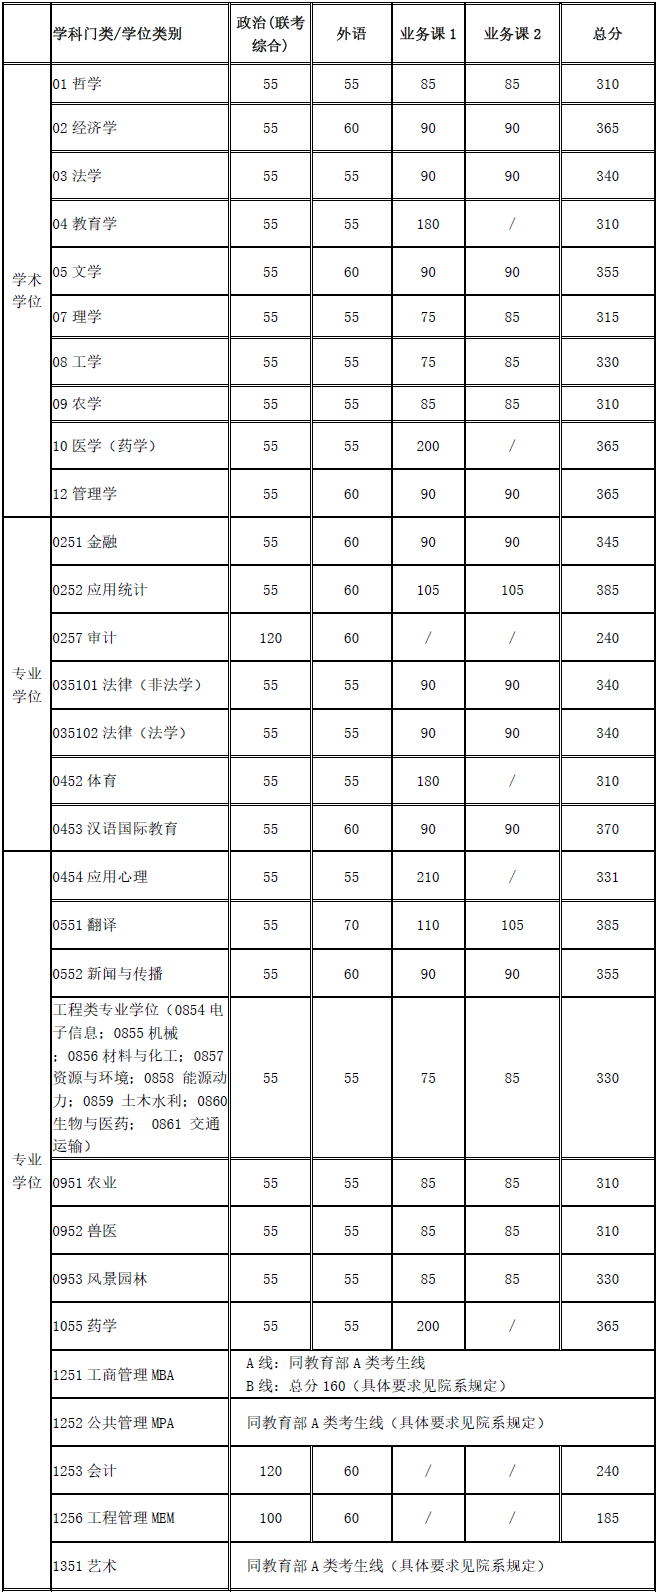 上海交通大学2020年硕士研究生入学考试复试基本分数线发布